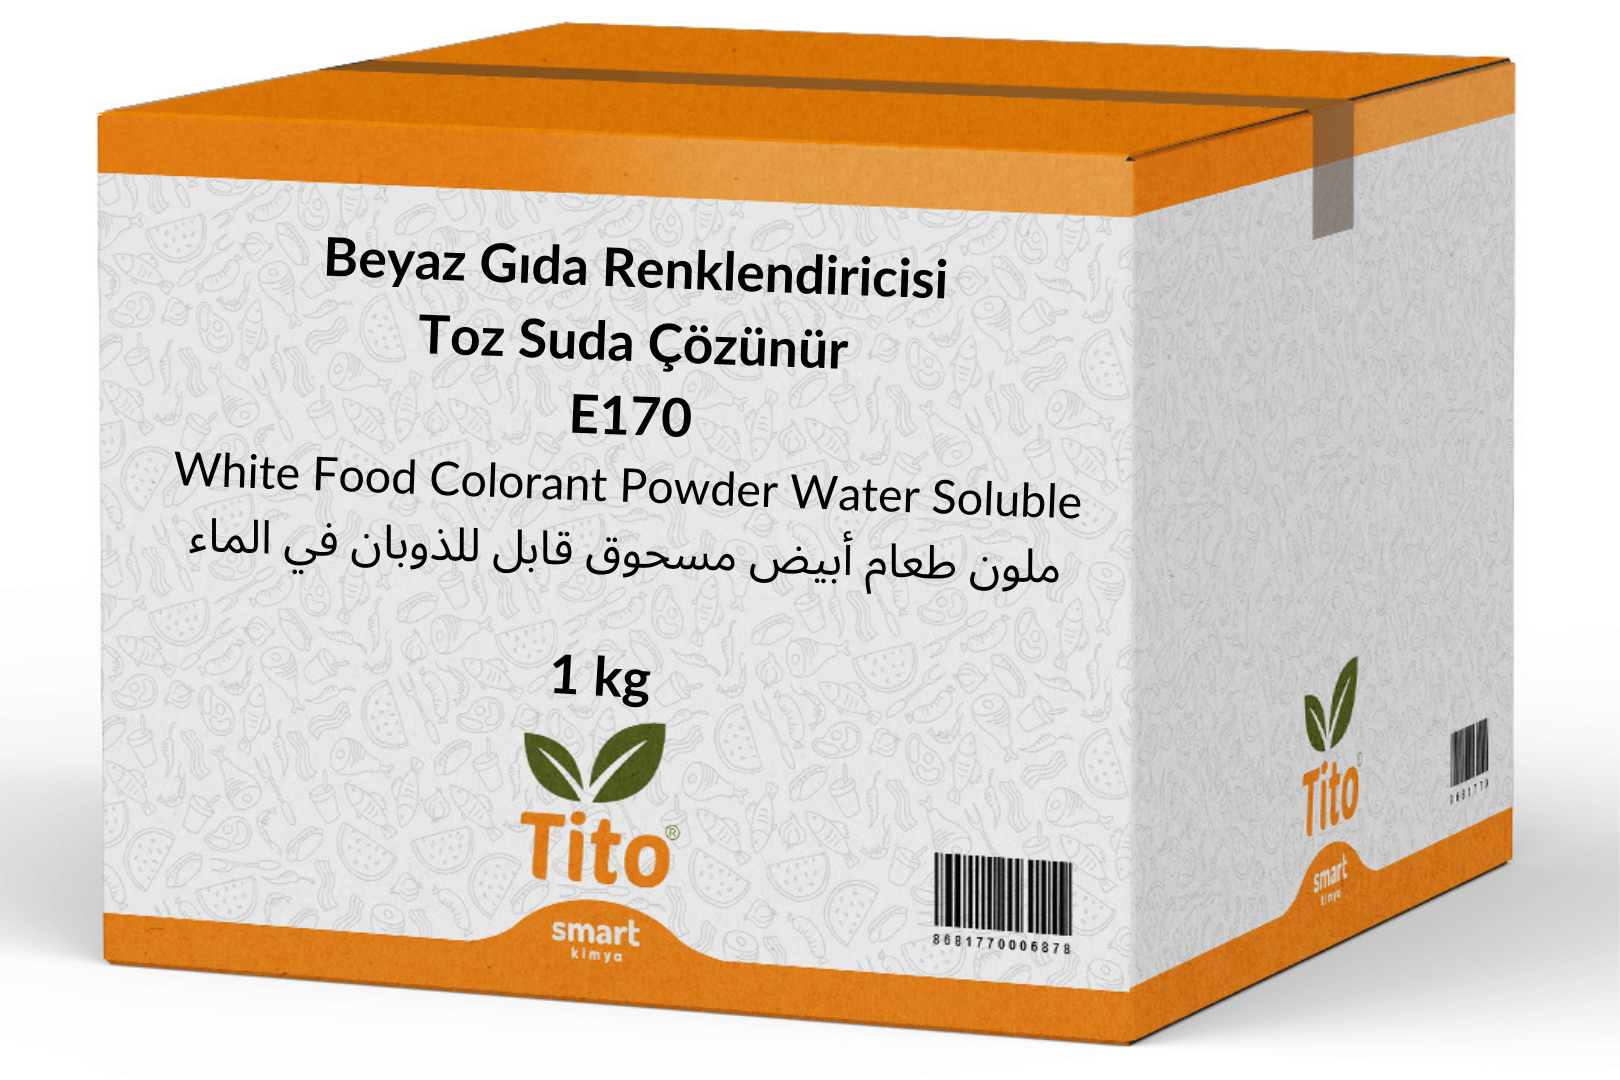 Beyaz Gıda Renklendiricisi Toz Suda Çözünür  E170 1 kg